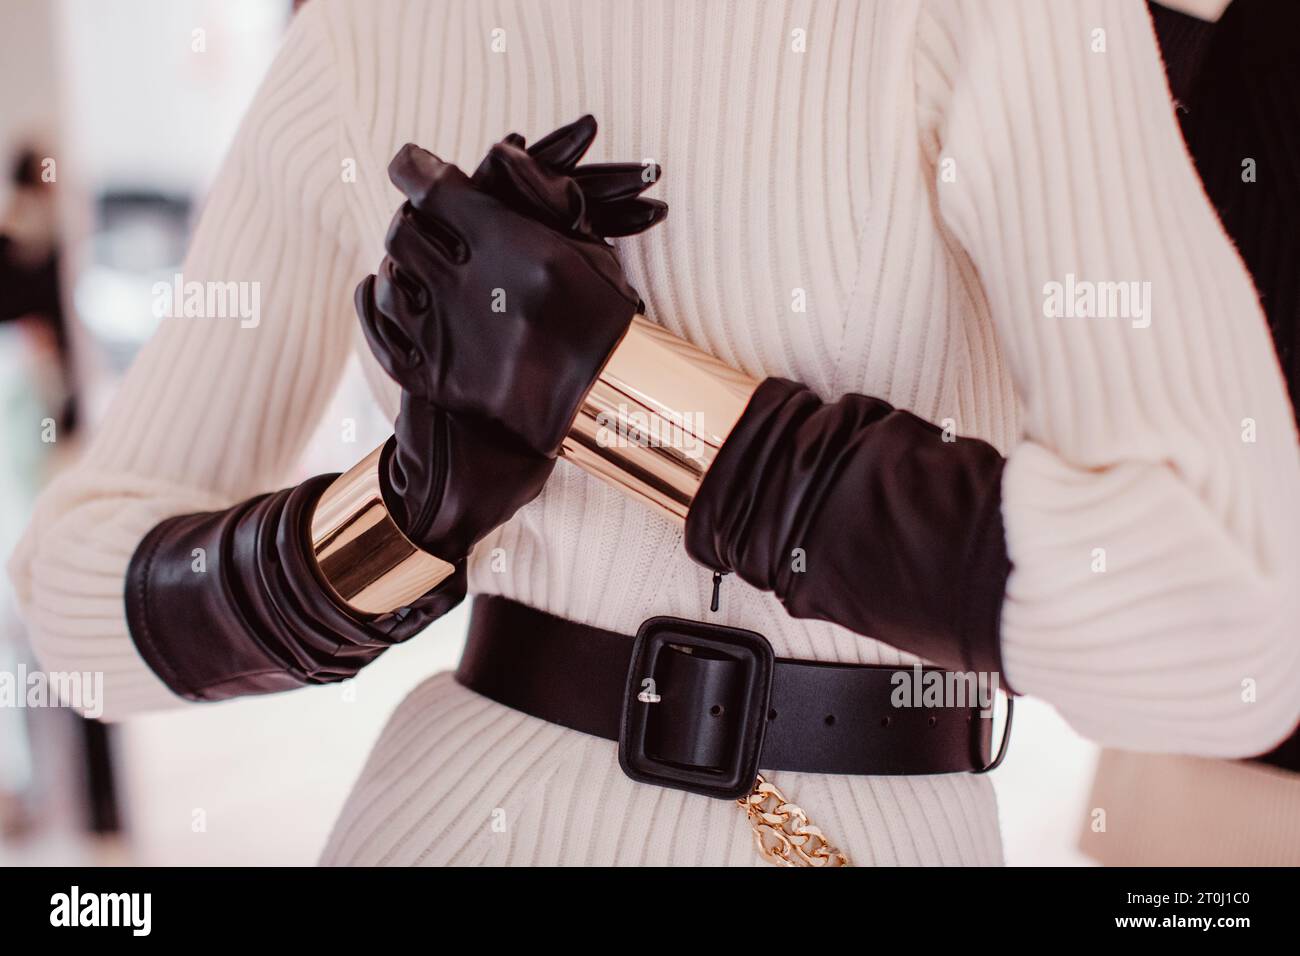 Modische Details eines gestrickten, warmweißen Pullovers, schwarzer Lederhandschuhe, Gürtel und goldene Armbänder. Damenmode und stylische Accessoires Stockfoto